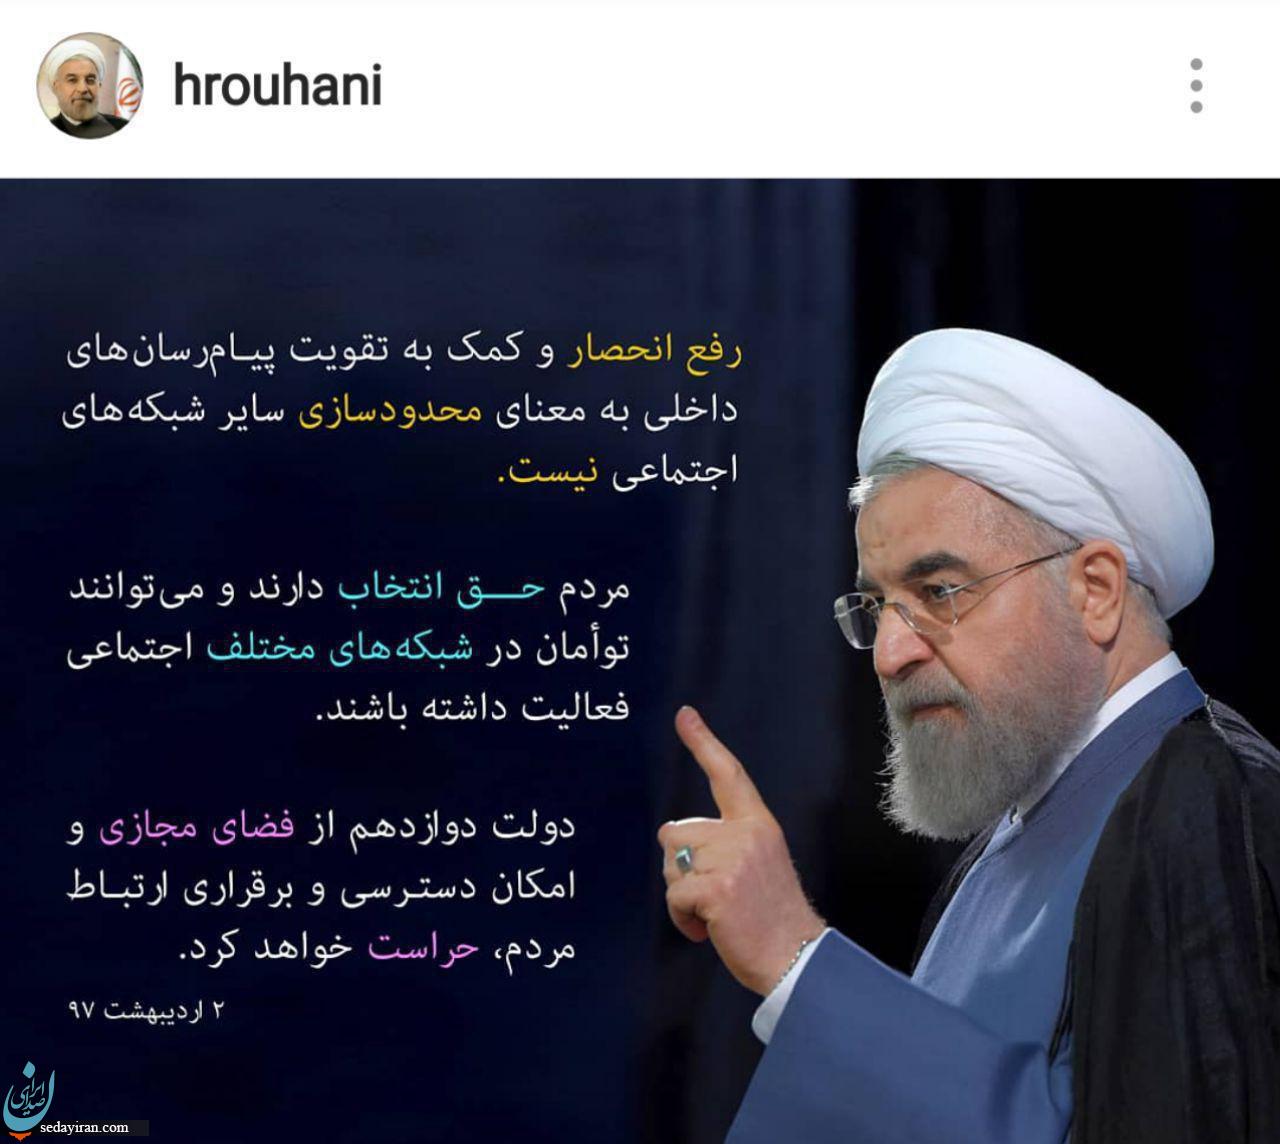 روحانی: فیلتر تلگرام انجام نمی شود